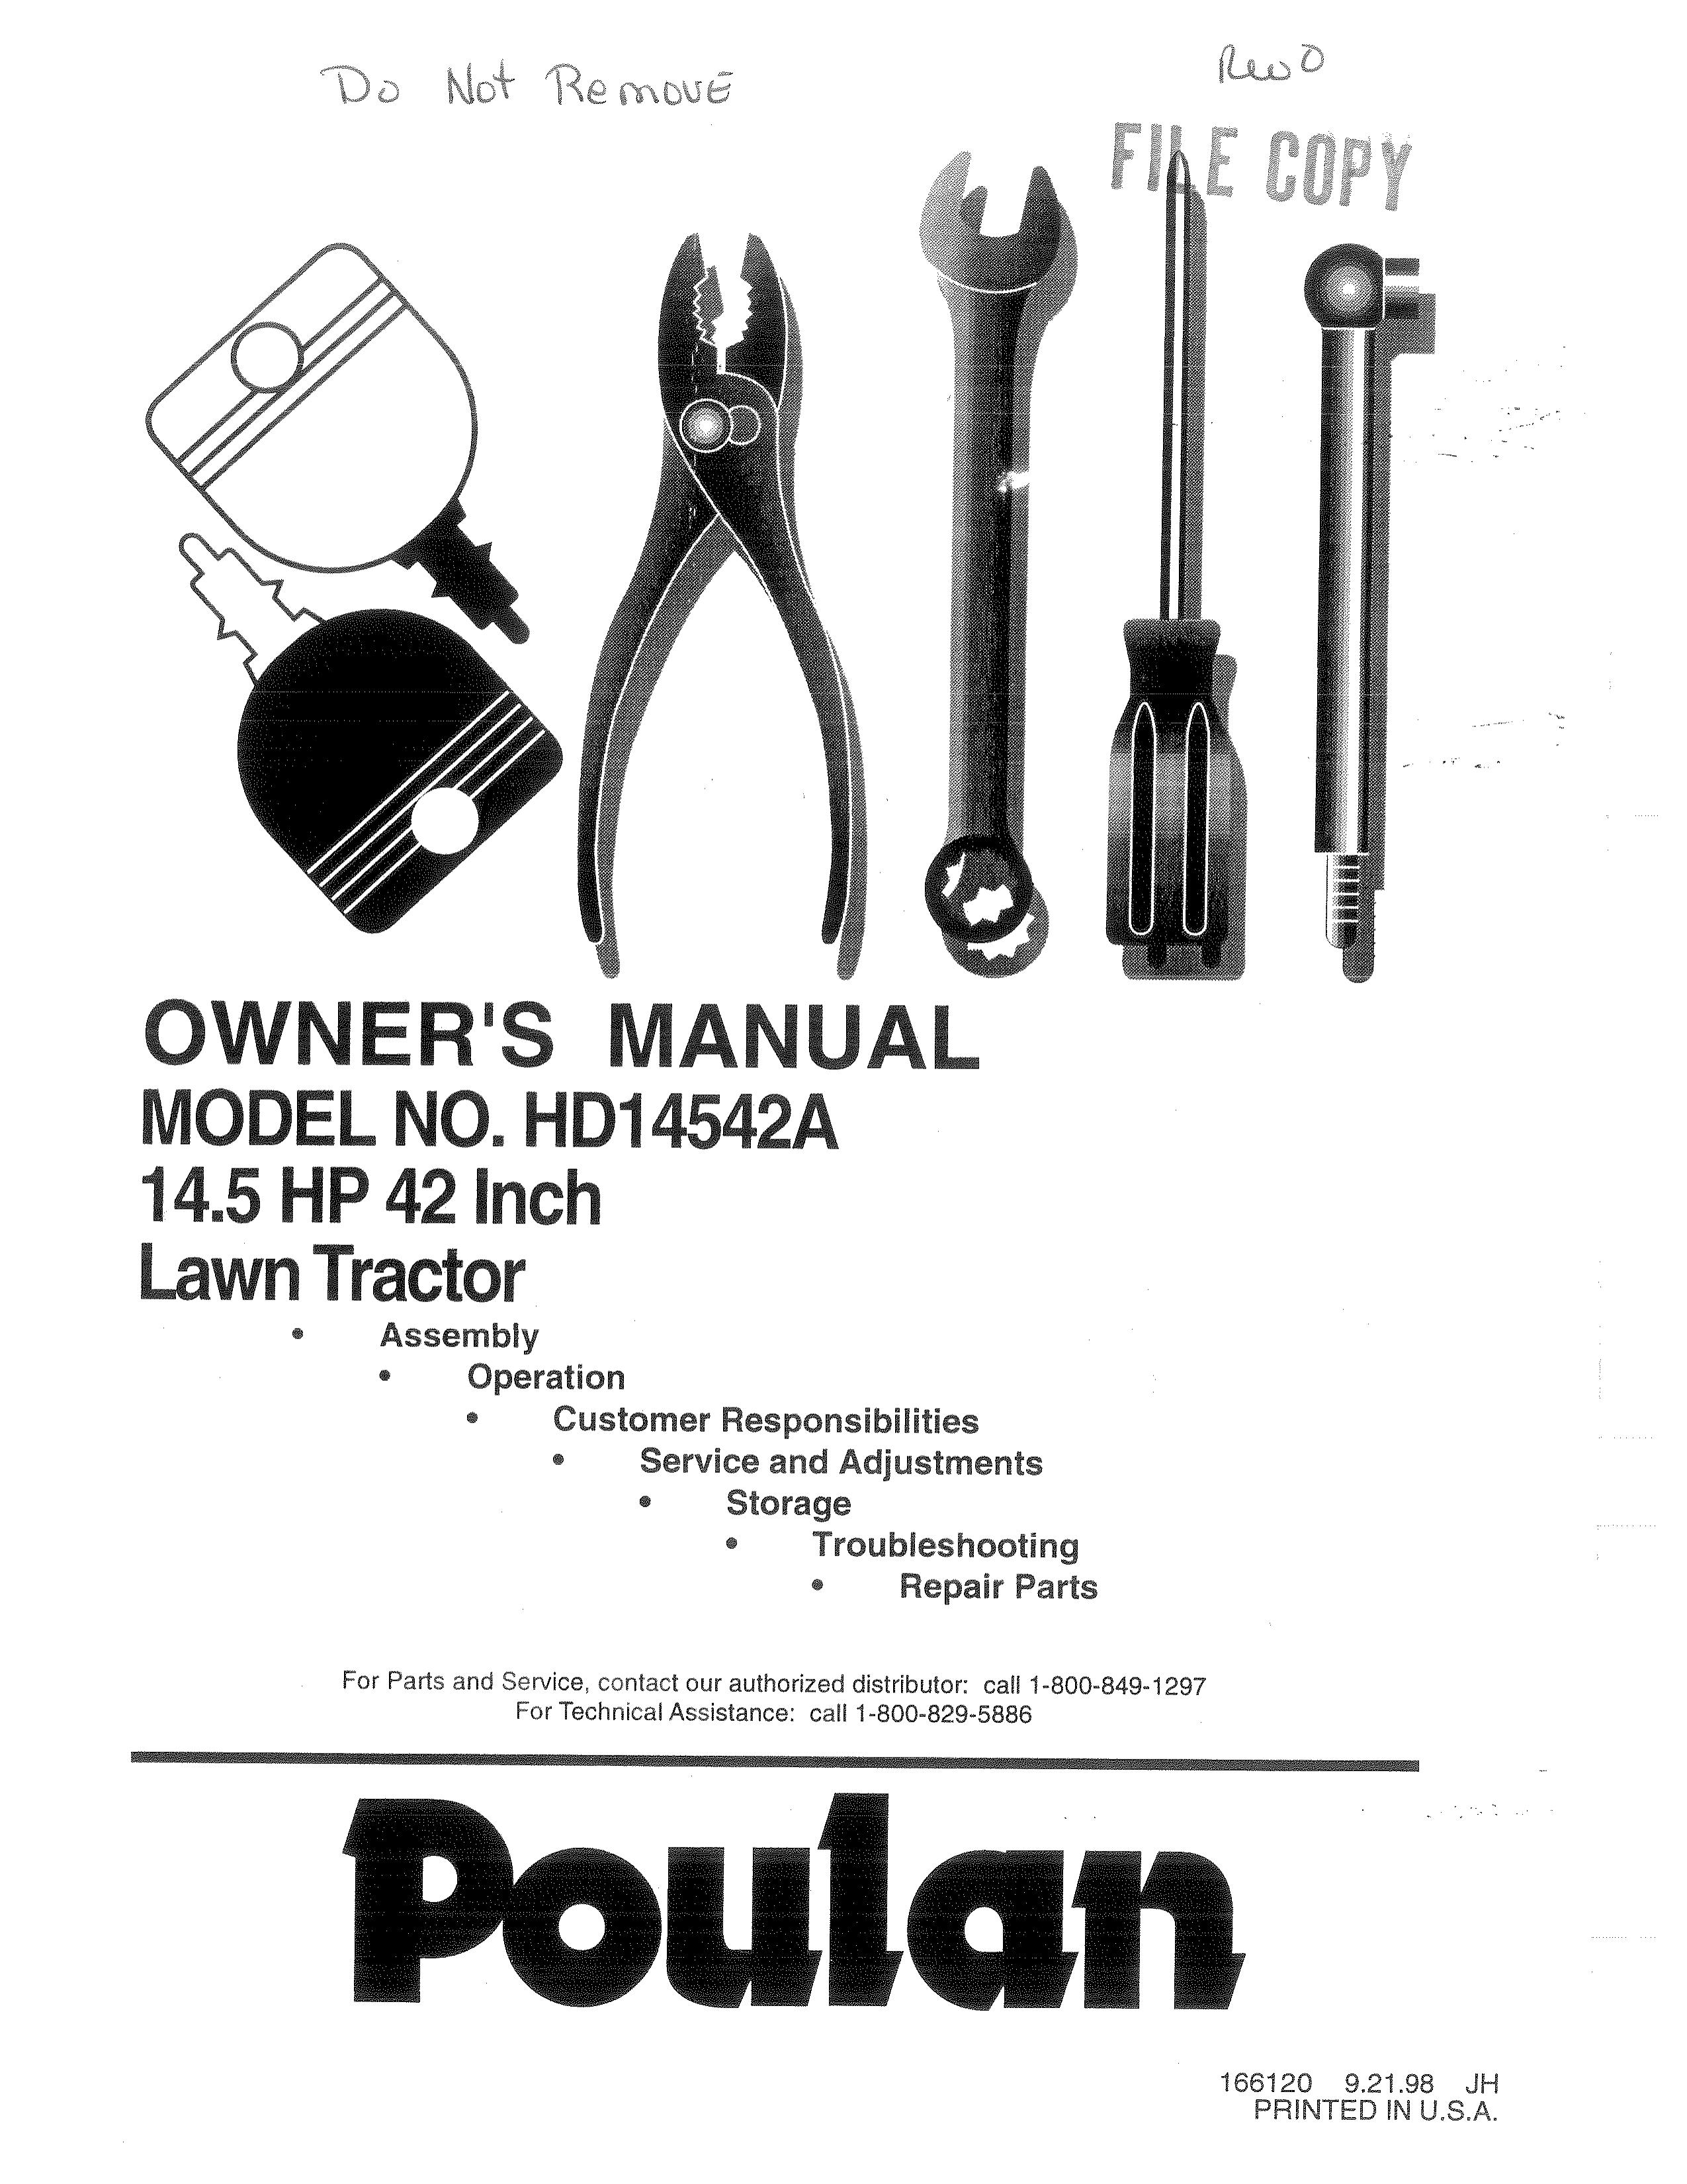 Poulan 166120 Lawn Mower User Manual